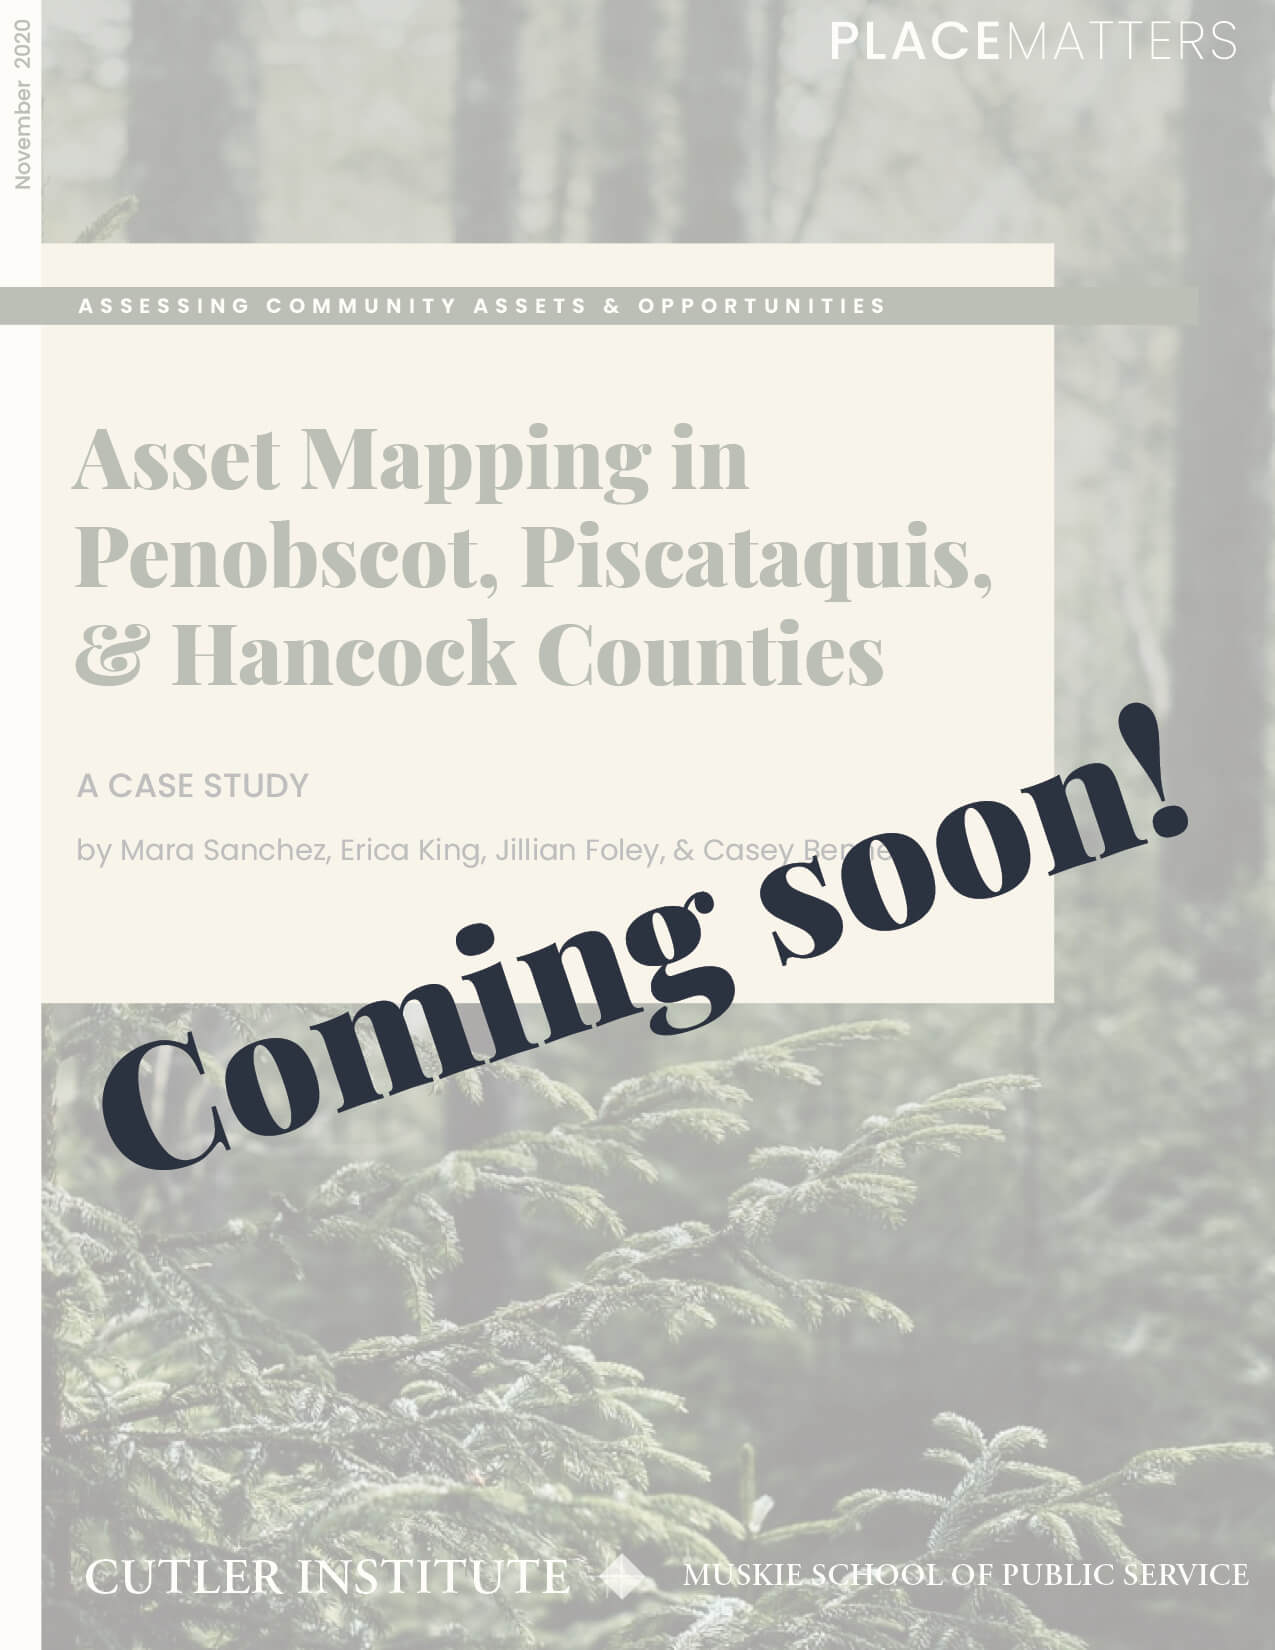 Asset Mapping in Penobscot, Piscataquis, & Hancock Counties report coming soon